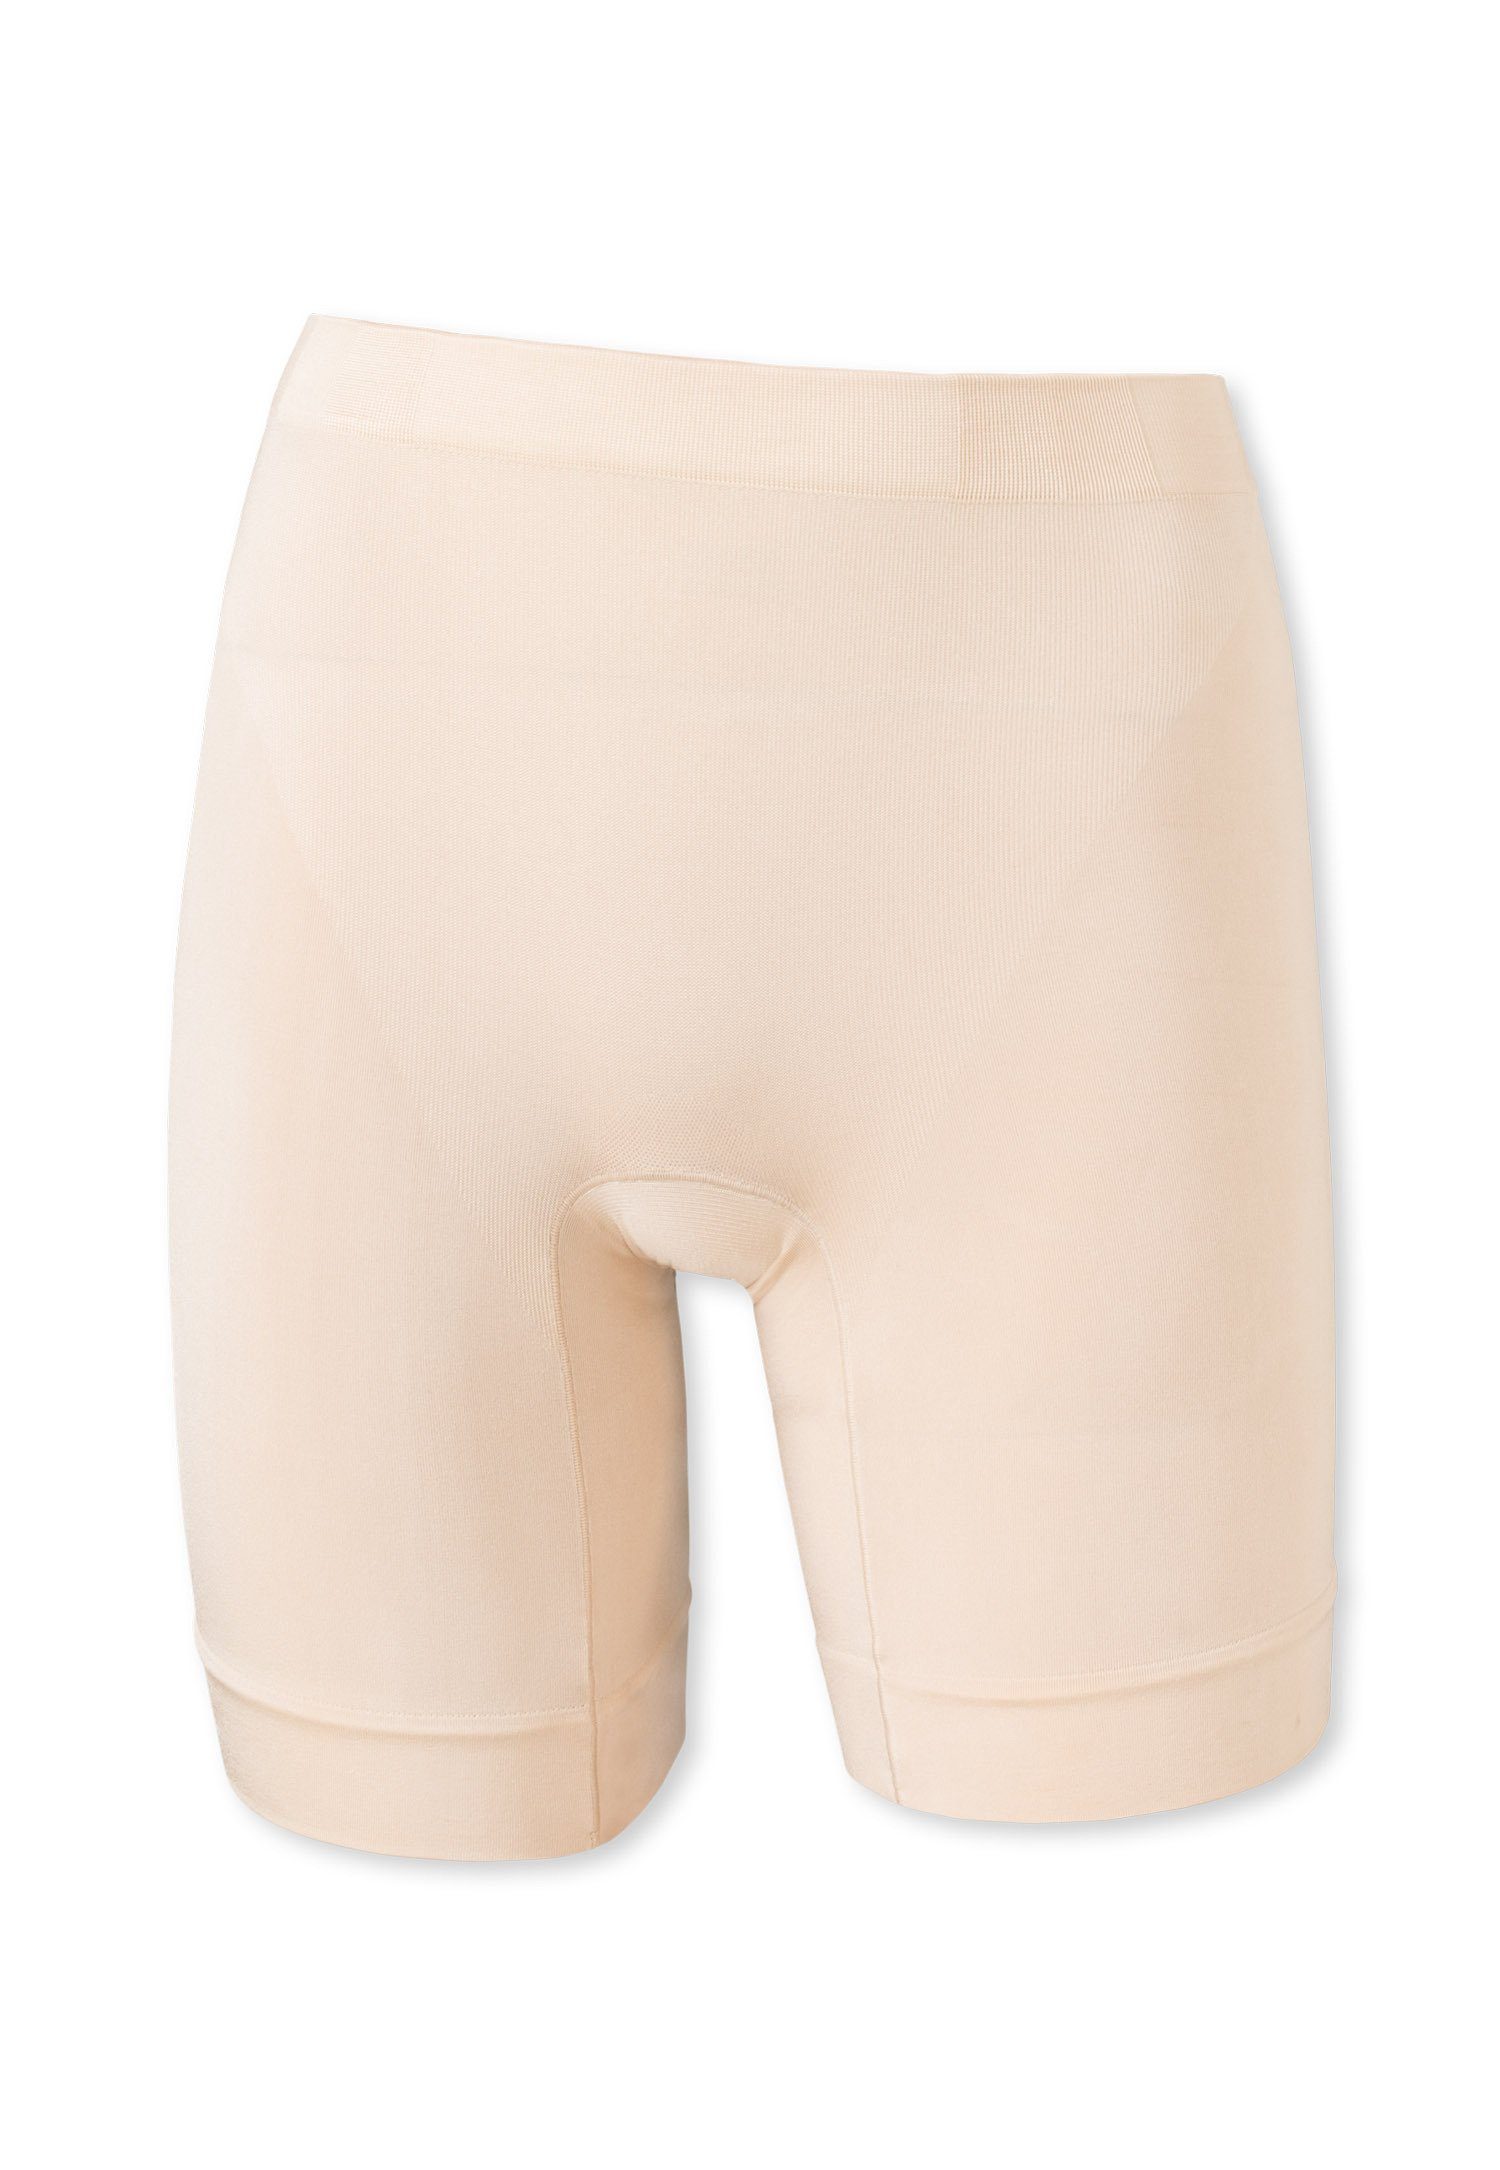 Schiesser Panty Damen Pants, Shapewear, Unterhose Longshorts - Beige